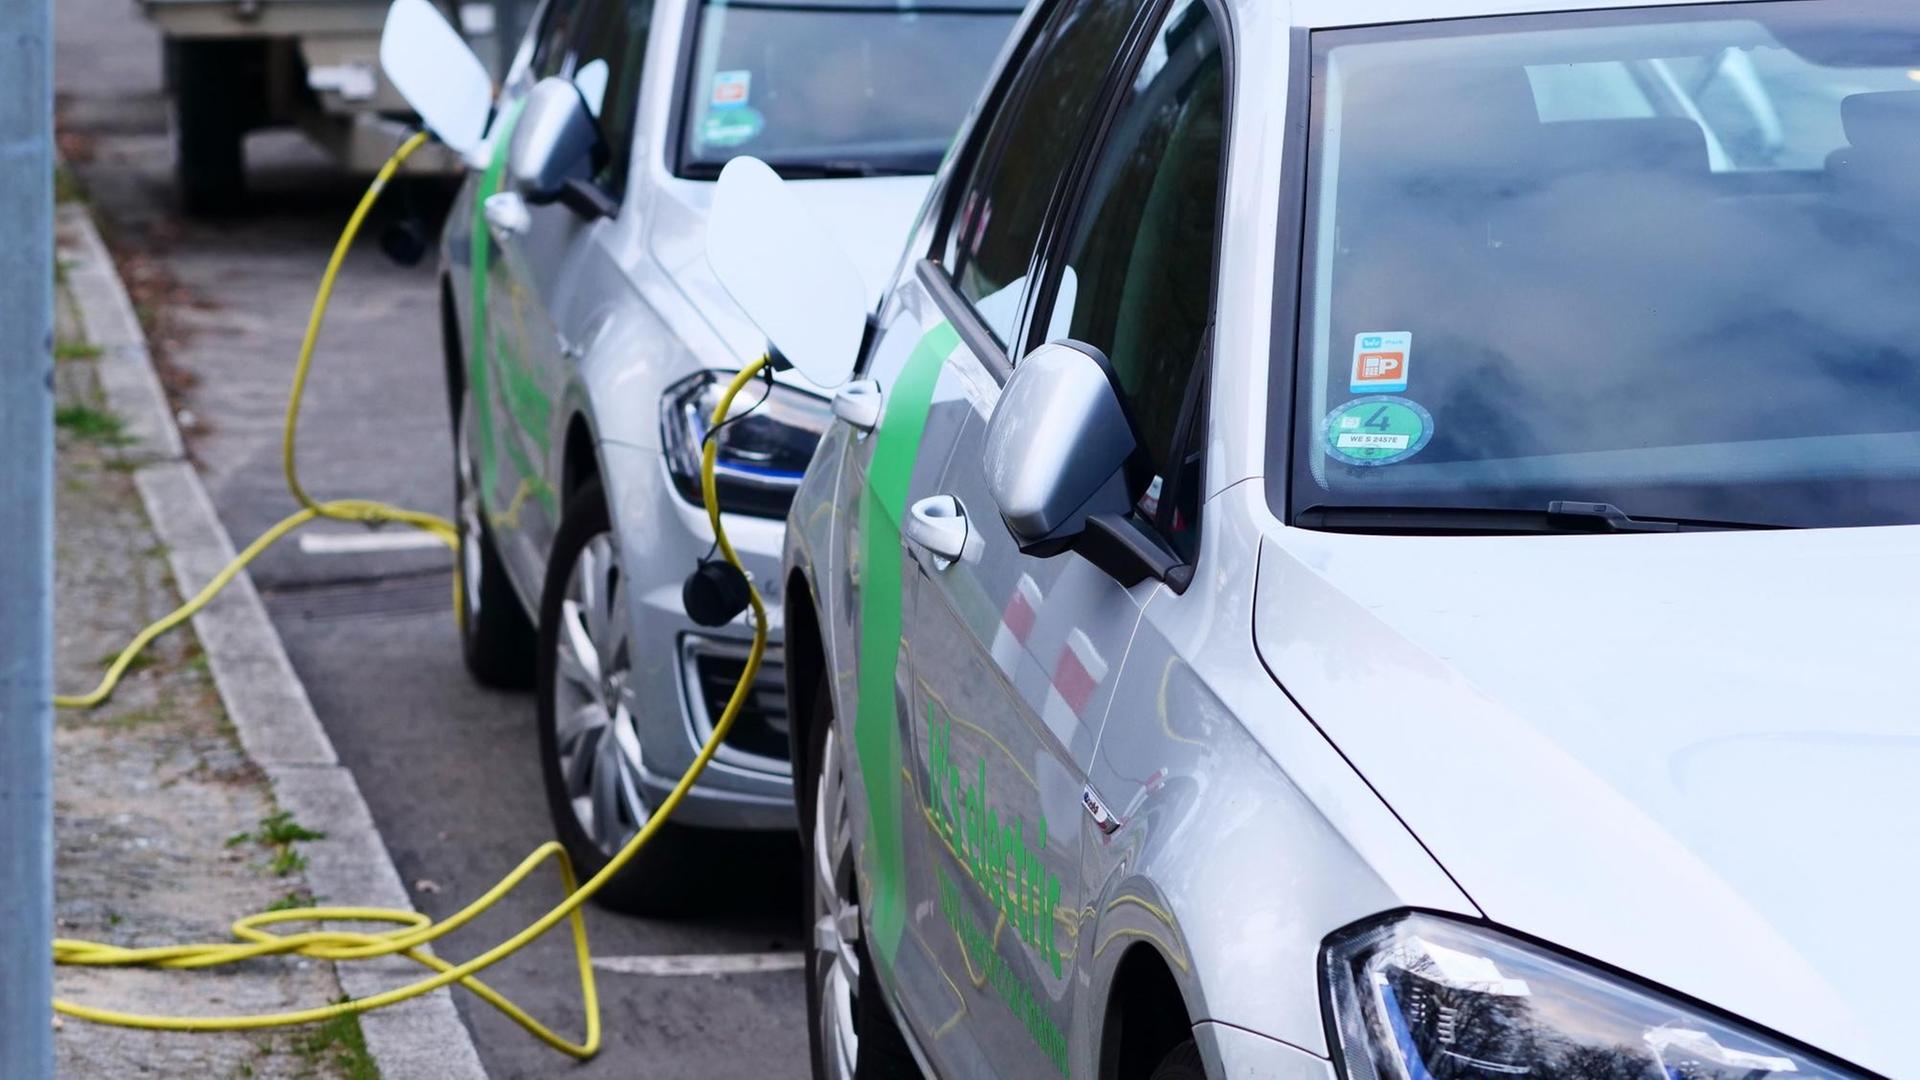 Elektroautos vom Carsharing-Anbieter "We share" stehen an einer Ladesäule für E-Autos und werden aufgeladen.